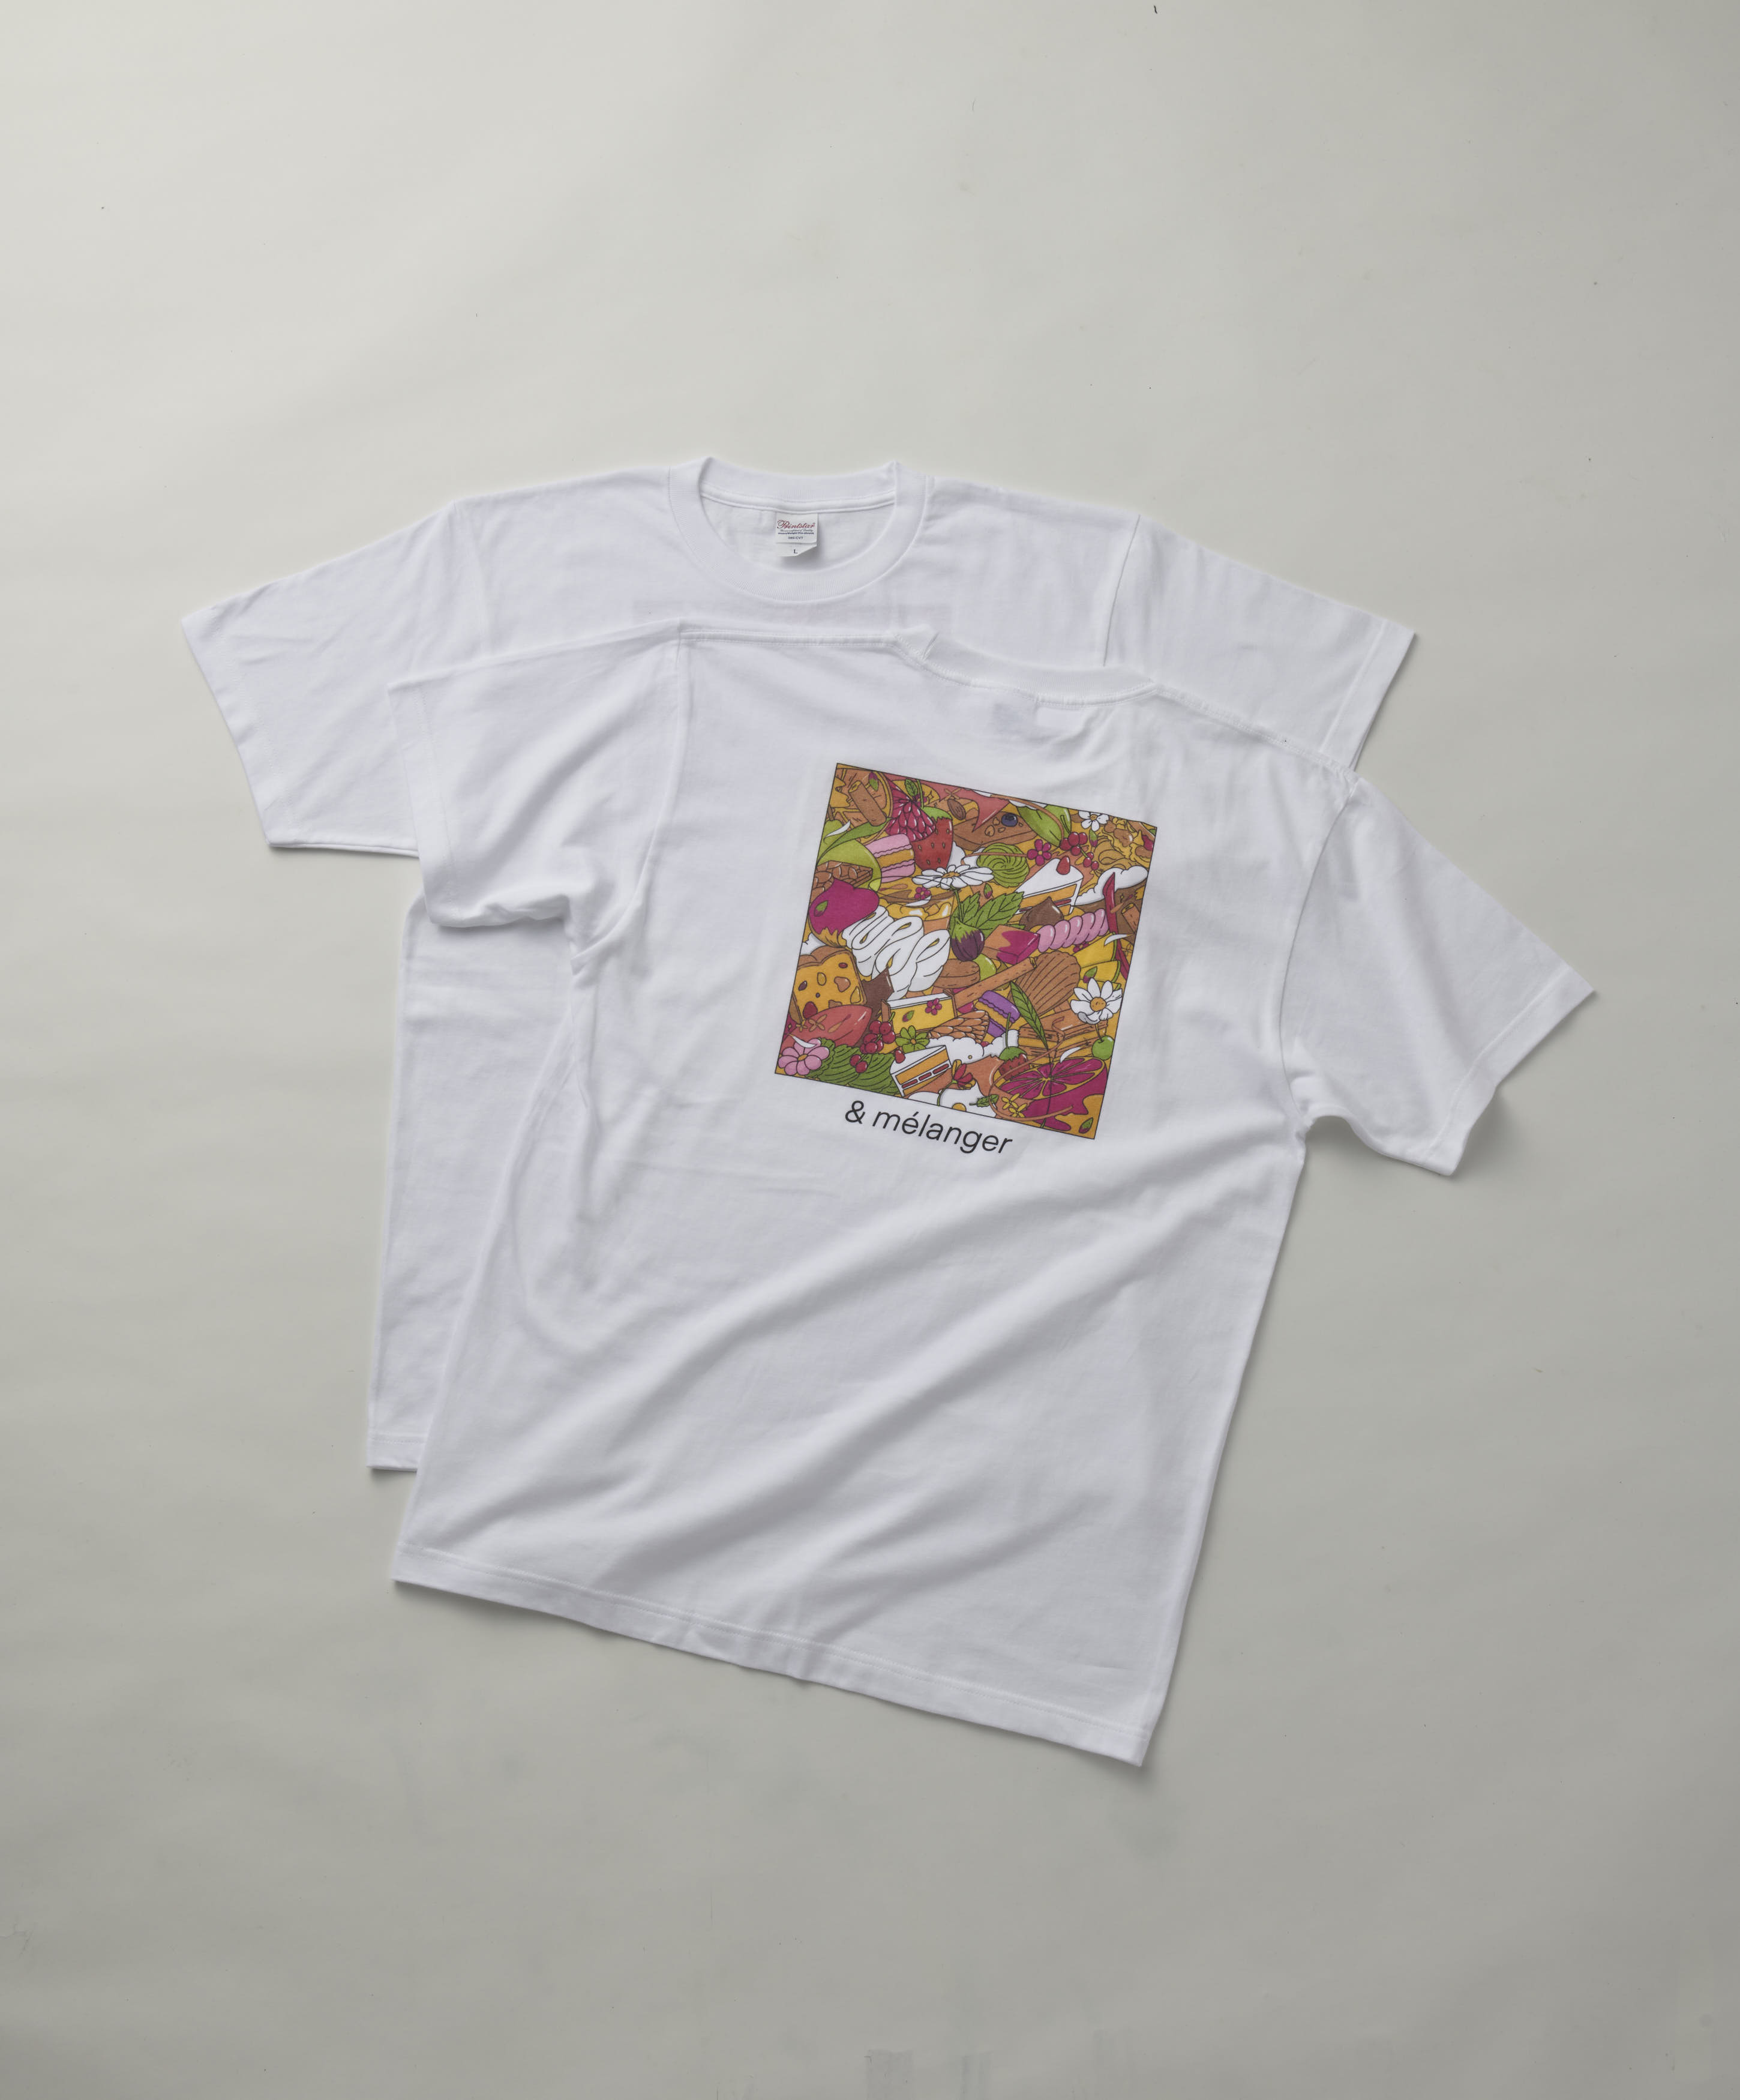 有名パティシエによる夢のコラボ企画 「& mélanger（エ メランジェ）」を9月27日から開催のサブ画像8_「& mélanger（エ メランジェ）」オリジナルデザインTシャツ